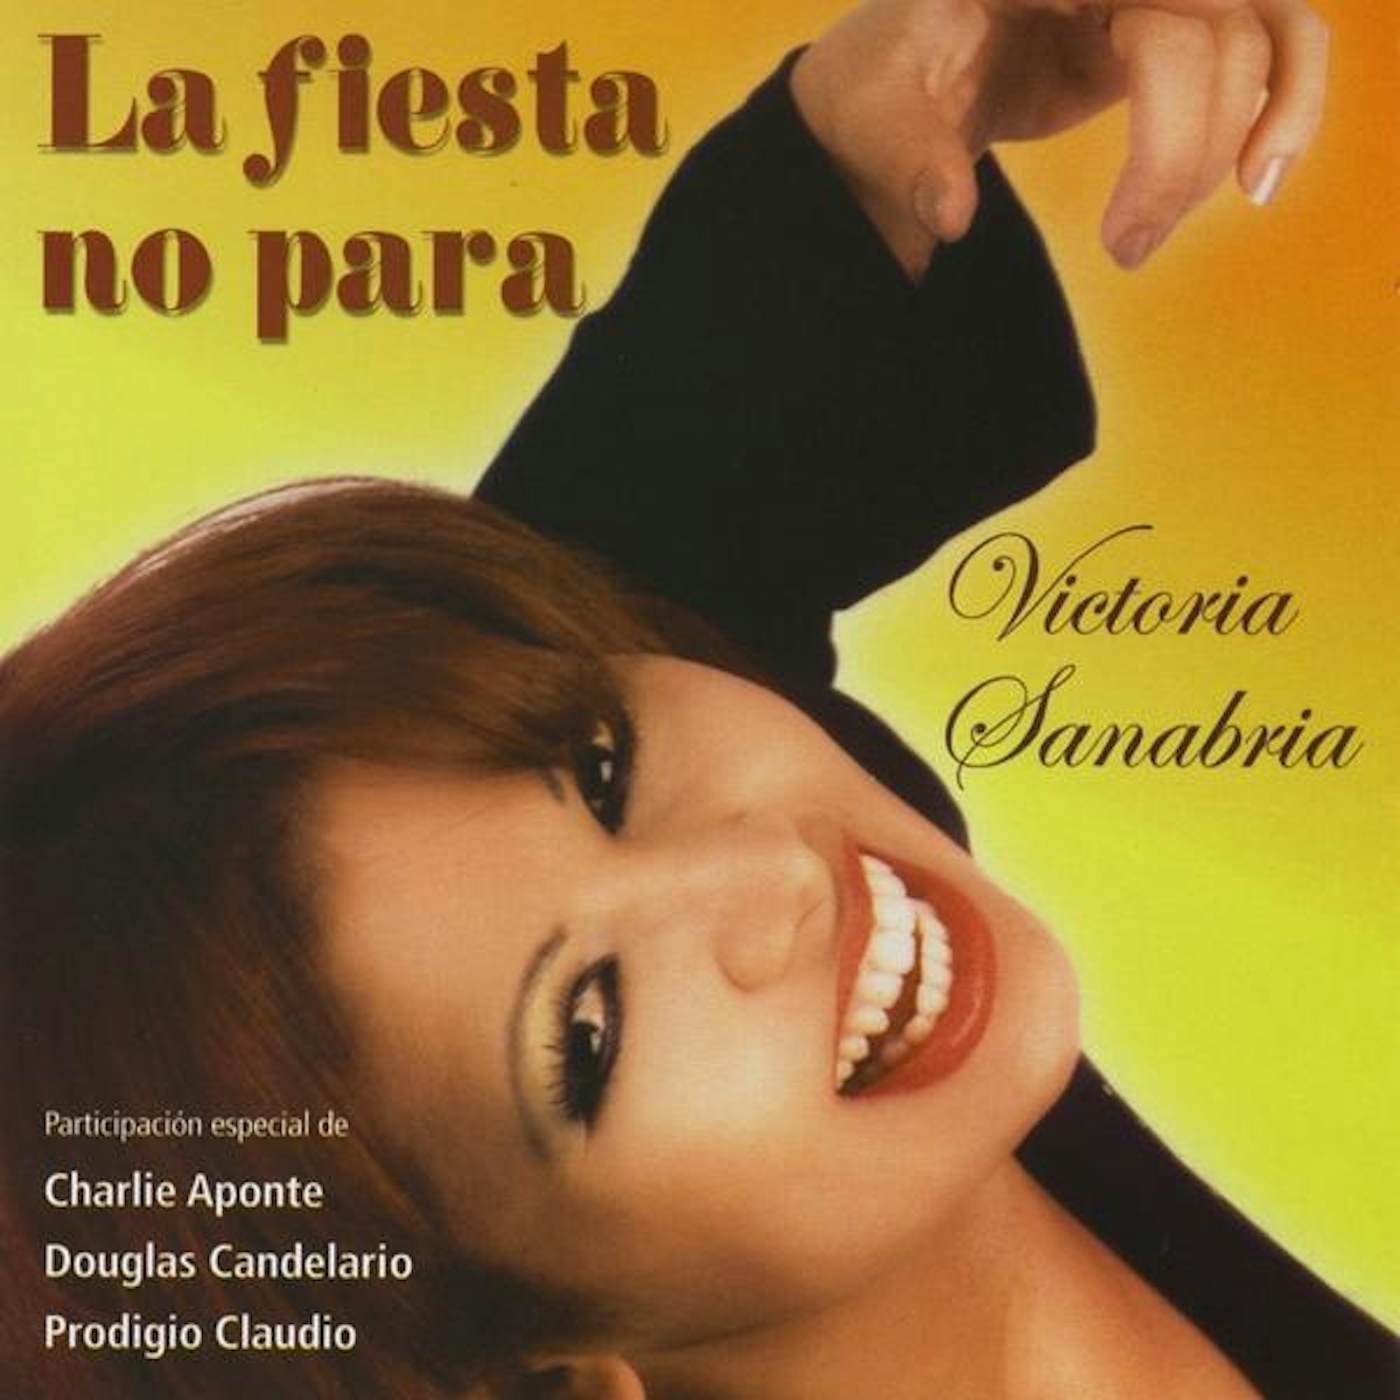 Victoria Sanabria LA FIESTA NO PARA CD